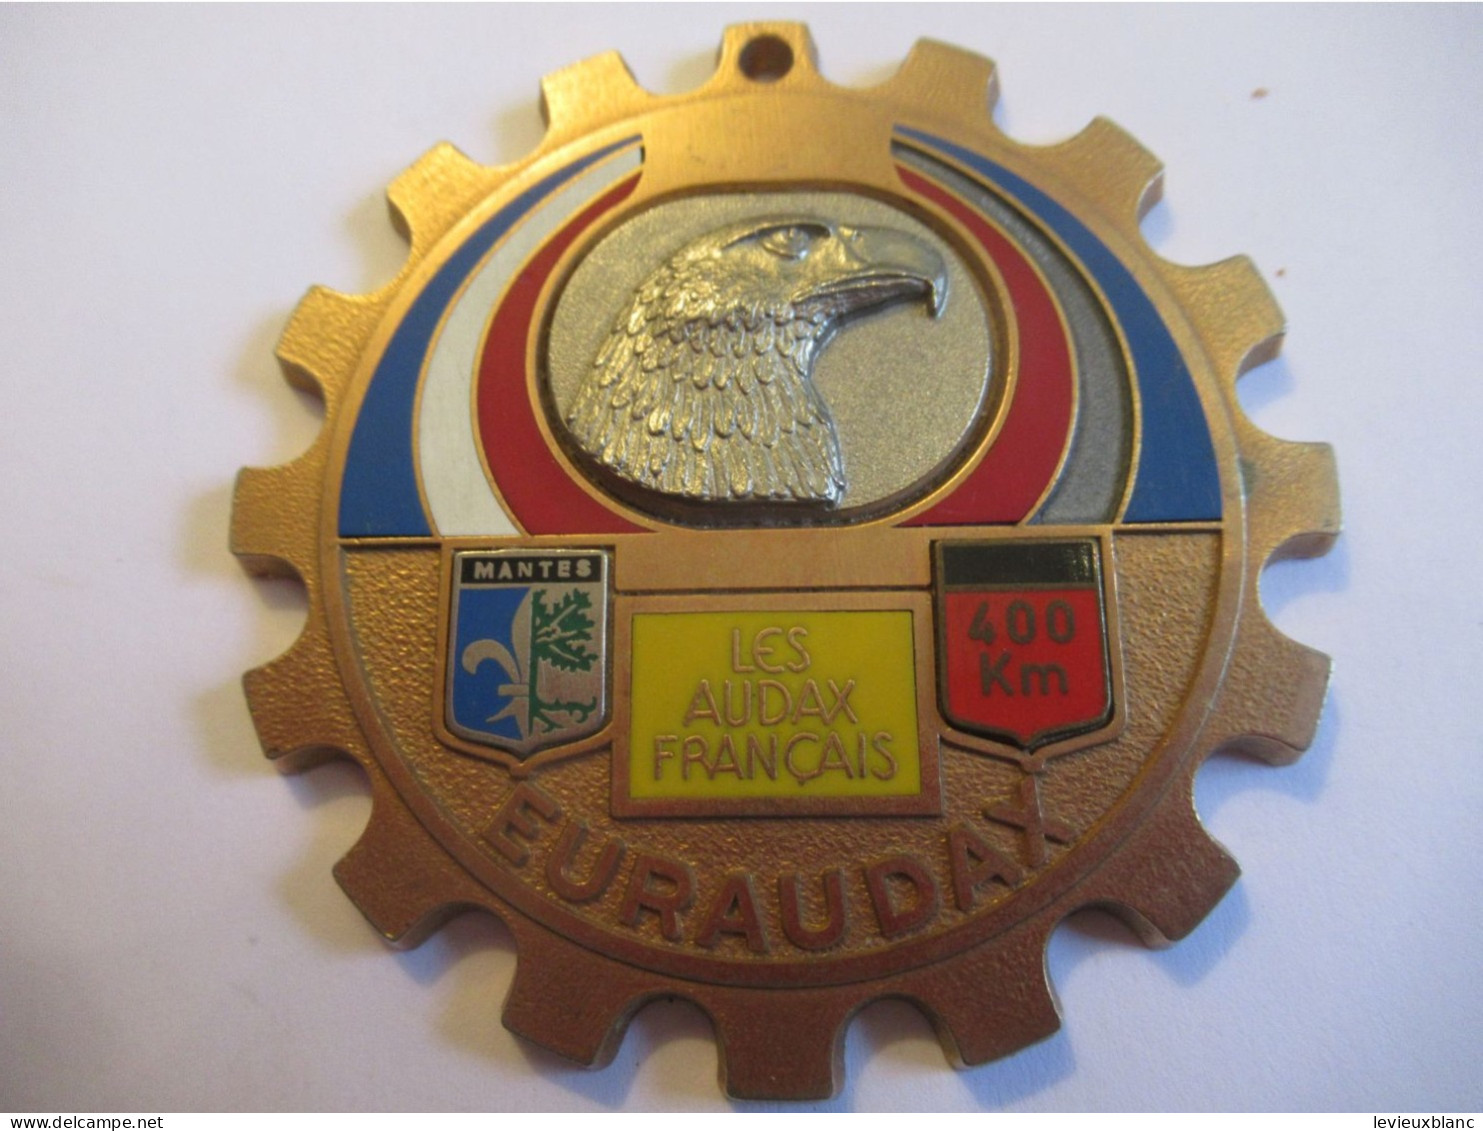 Bicyclette / EURAUDAX/Bronze Doré  Cloisonné/Les Audax Français/Tête D'Aigle/ Mantes/ 400 Km/1979     SPO436 - Radsport